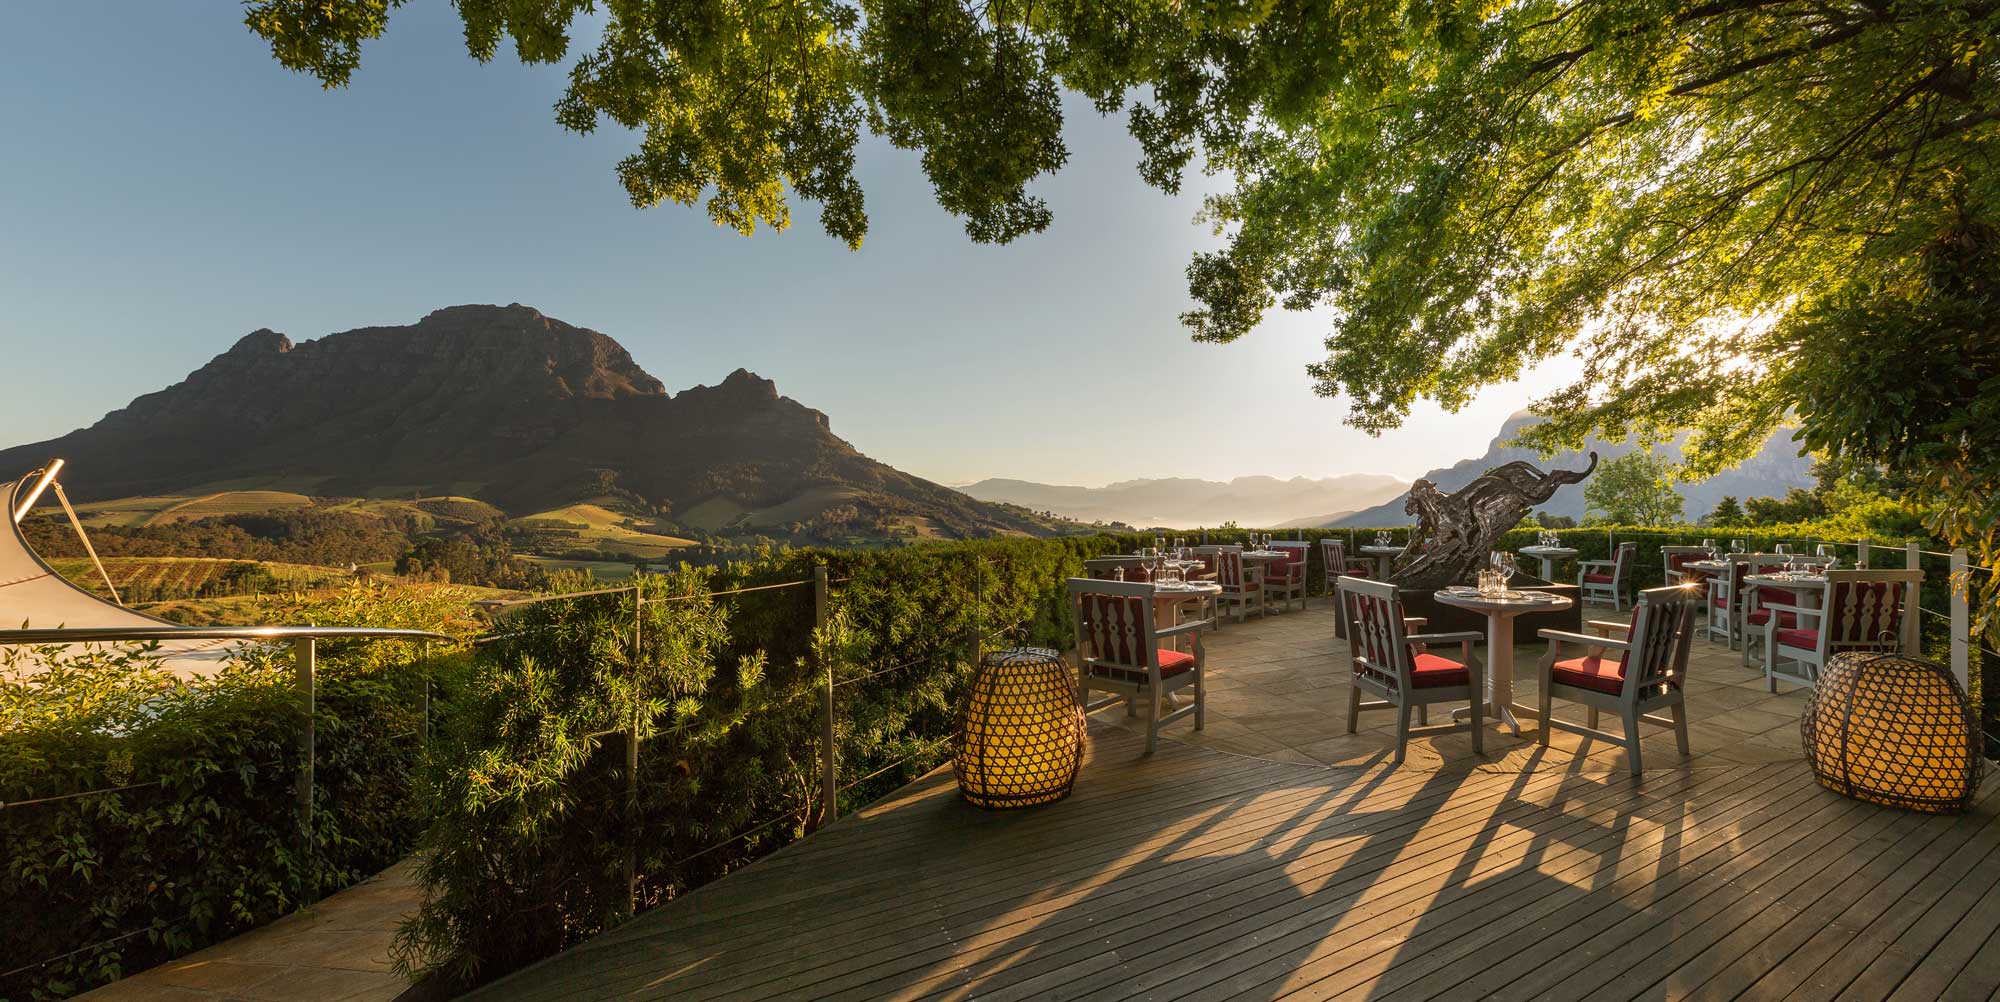 delaire graaff - best winelands restaurants with a view, top wine estate restaurants